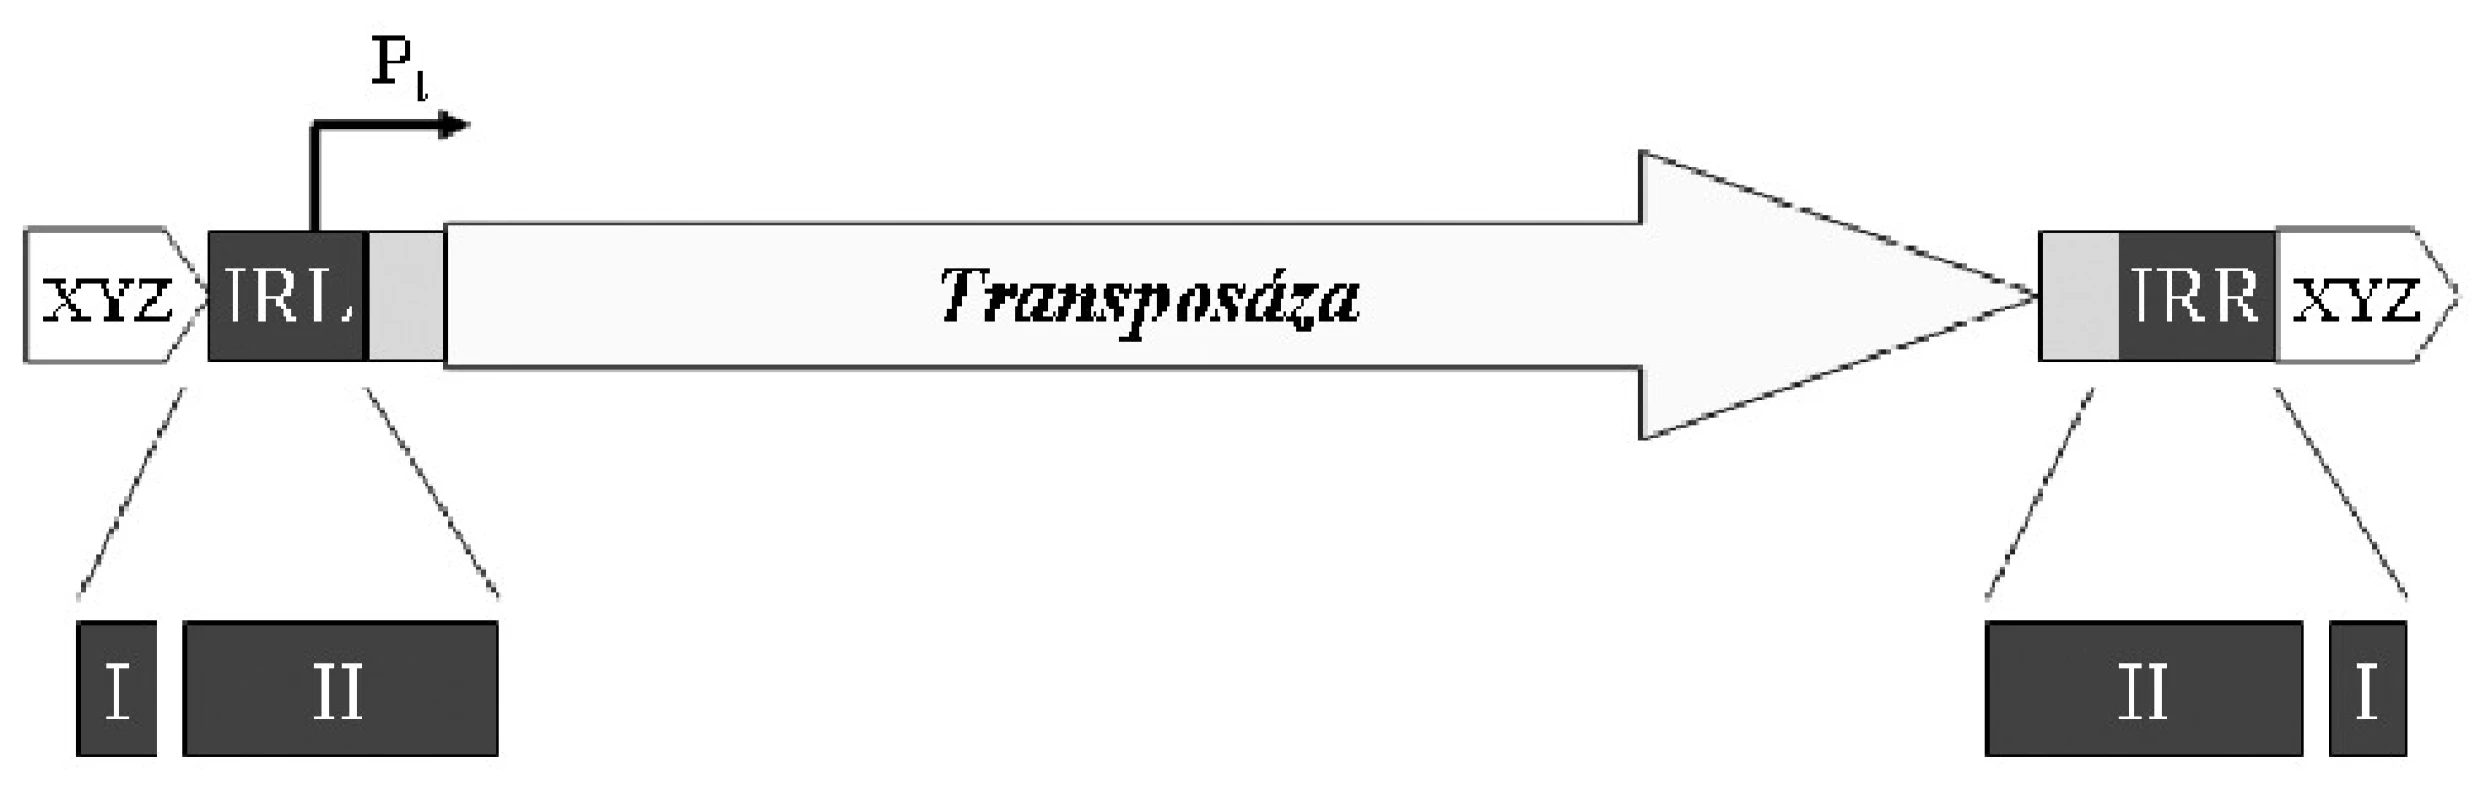 Obvyklá struktura inserční sekvence. IRL – invertovaná
repetice levá, IRR – invertovaná repetice pravá, Pt – promotor
genu transposázy, I – doména rozpoznávaná transposázou
jako štěpné místo, II – vazebná doména transposázy, XYZ
– generované repetice. Volně podle [32].
&lt;b&gt;Fig. 1. &lt;/b&gt;General structure of the insertion sequence. IRL –
inverted repeat left, IRR – inverted repeat right, Pt – transposase
gene promoter, I – transposase-recognized insertion
domain, II – transposase-binding domain, XYZ – generated
repeats. Based on [32].